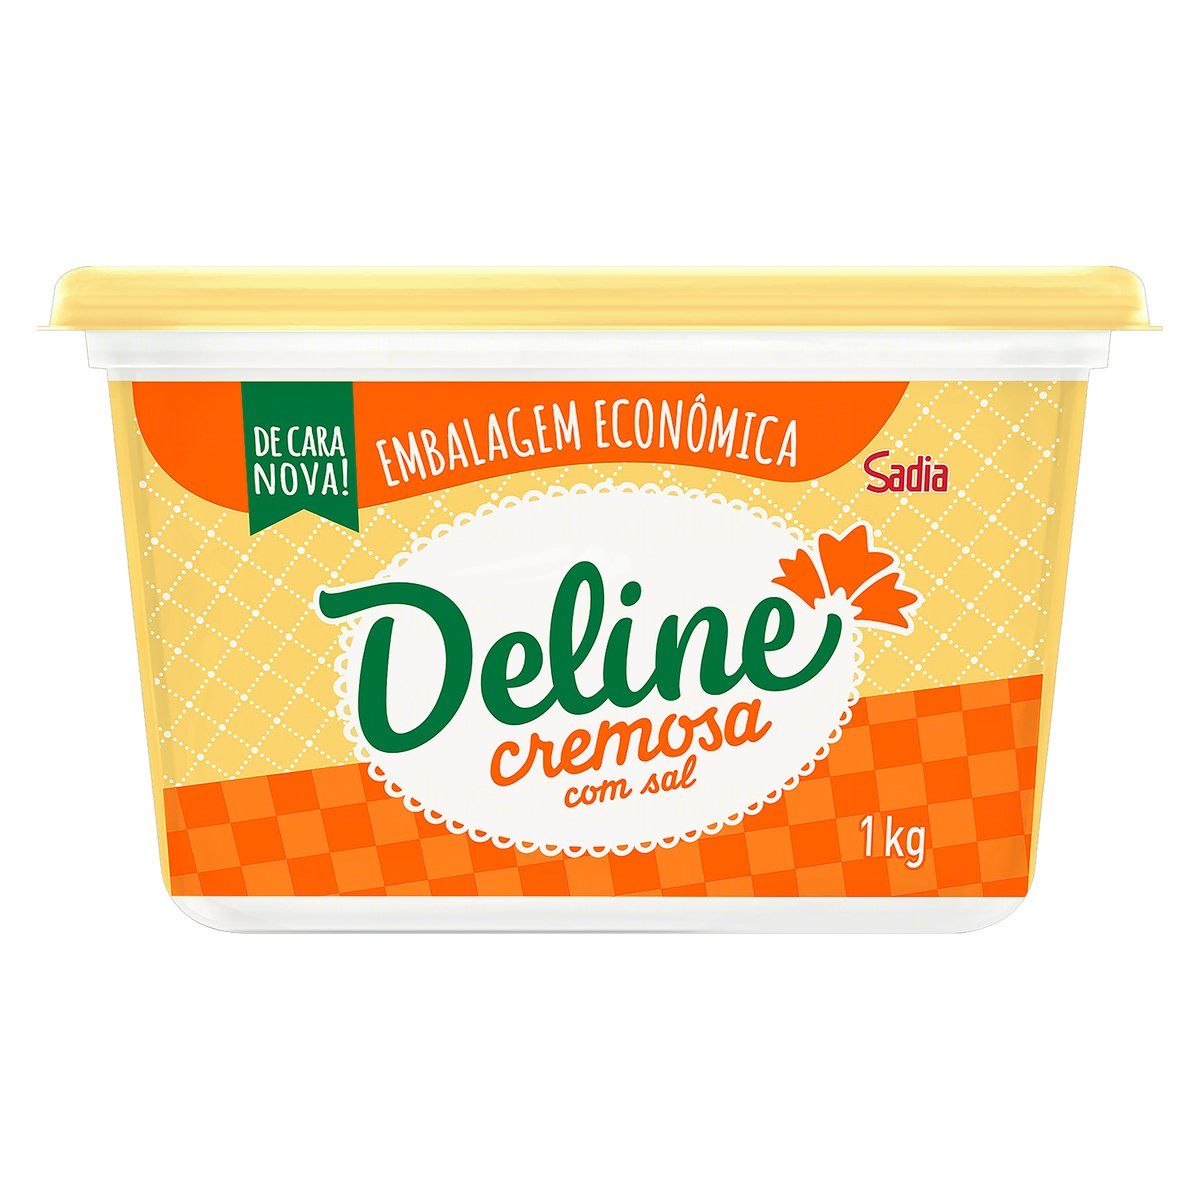 Margarina Cremosa com Sal Deline Pote 1kg Embalagem Econômica image number 0